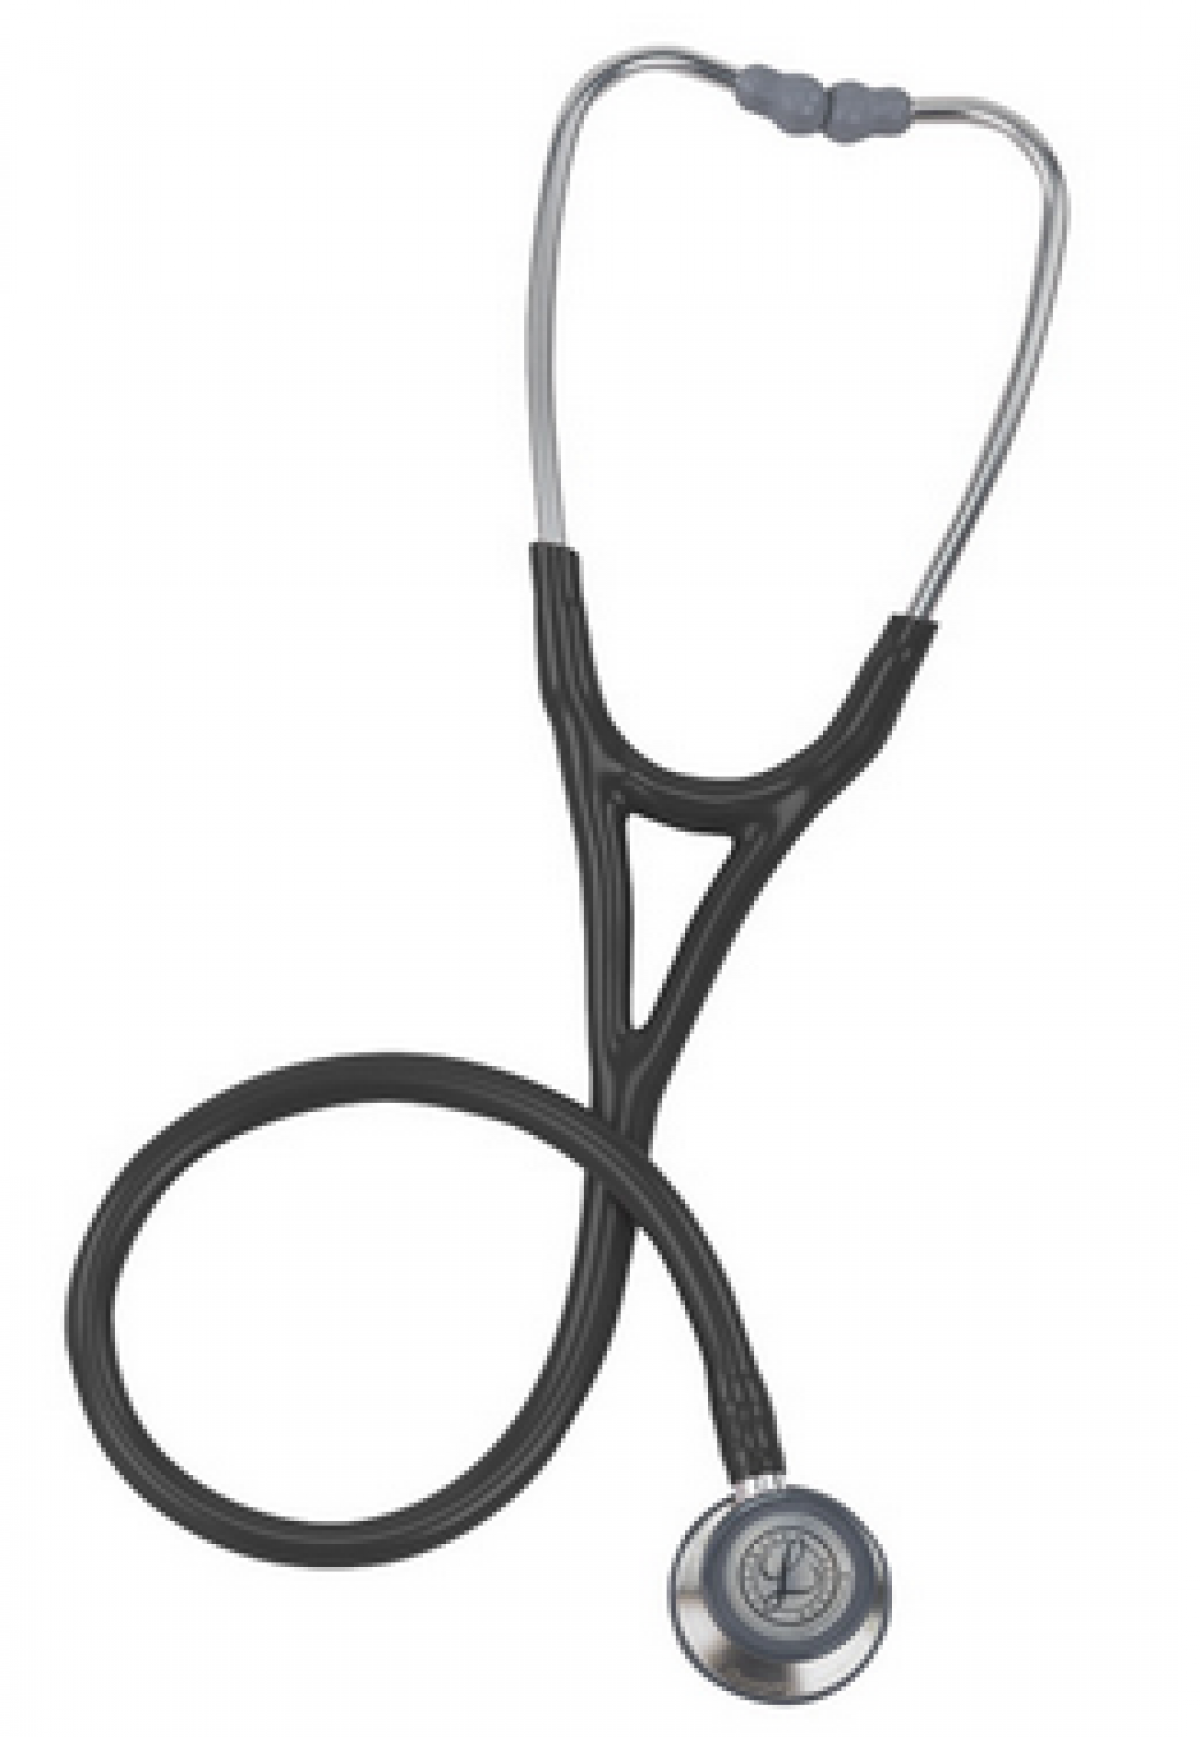 littmann cardiology stethoscope on sale